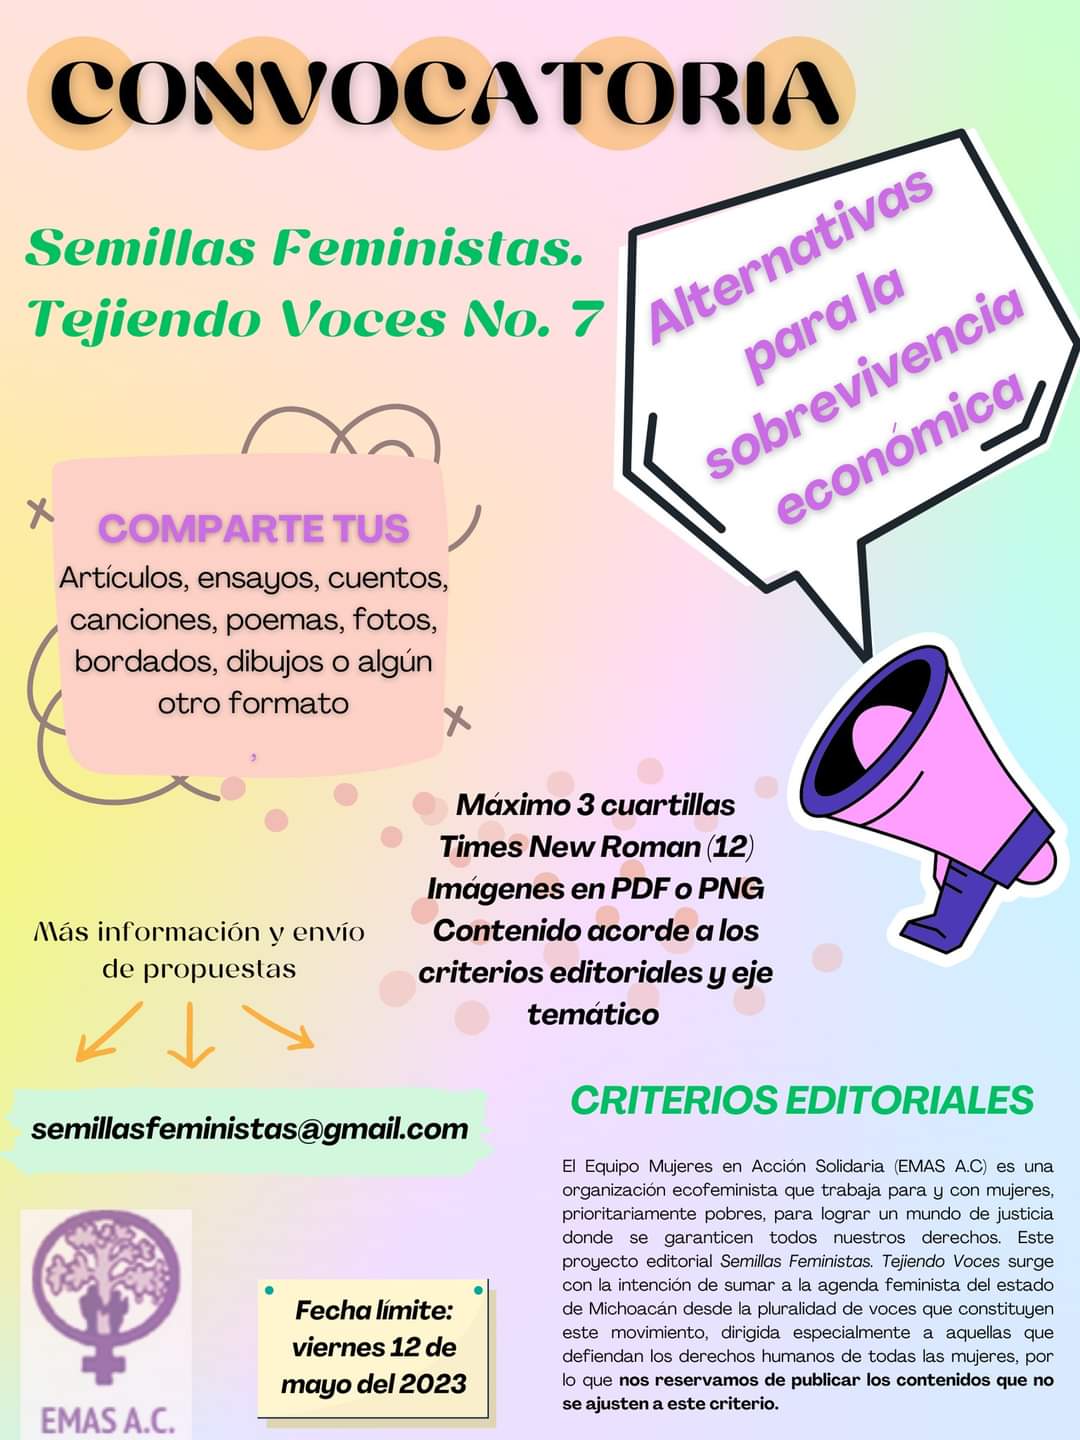 Semillas feministas convoca a mujeres a colaborar en revista digital